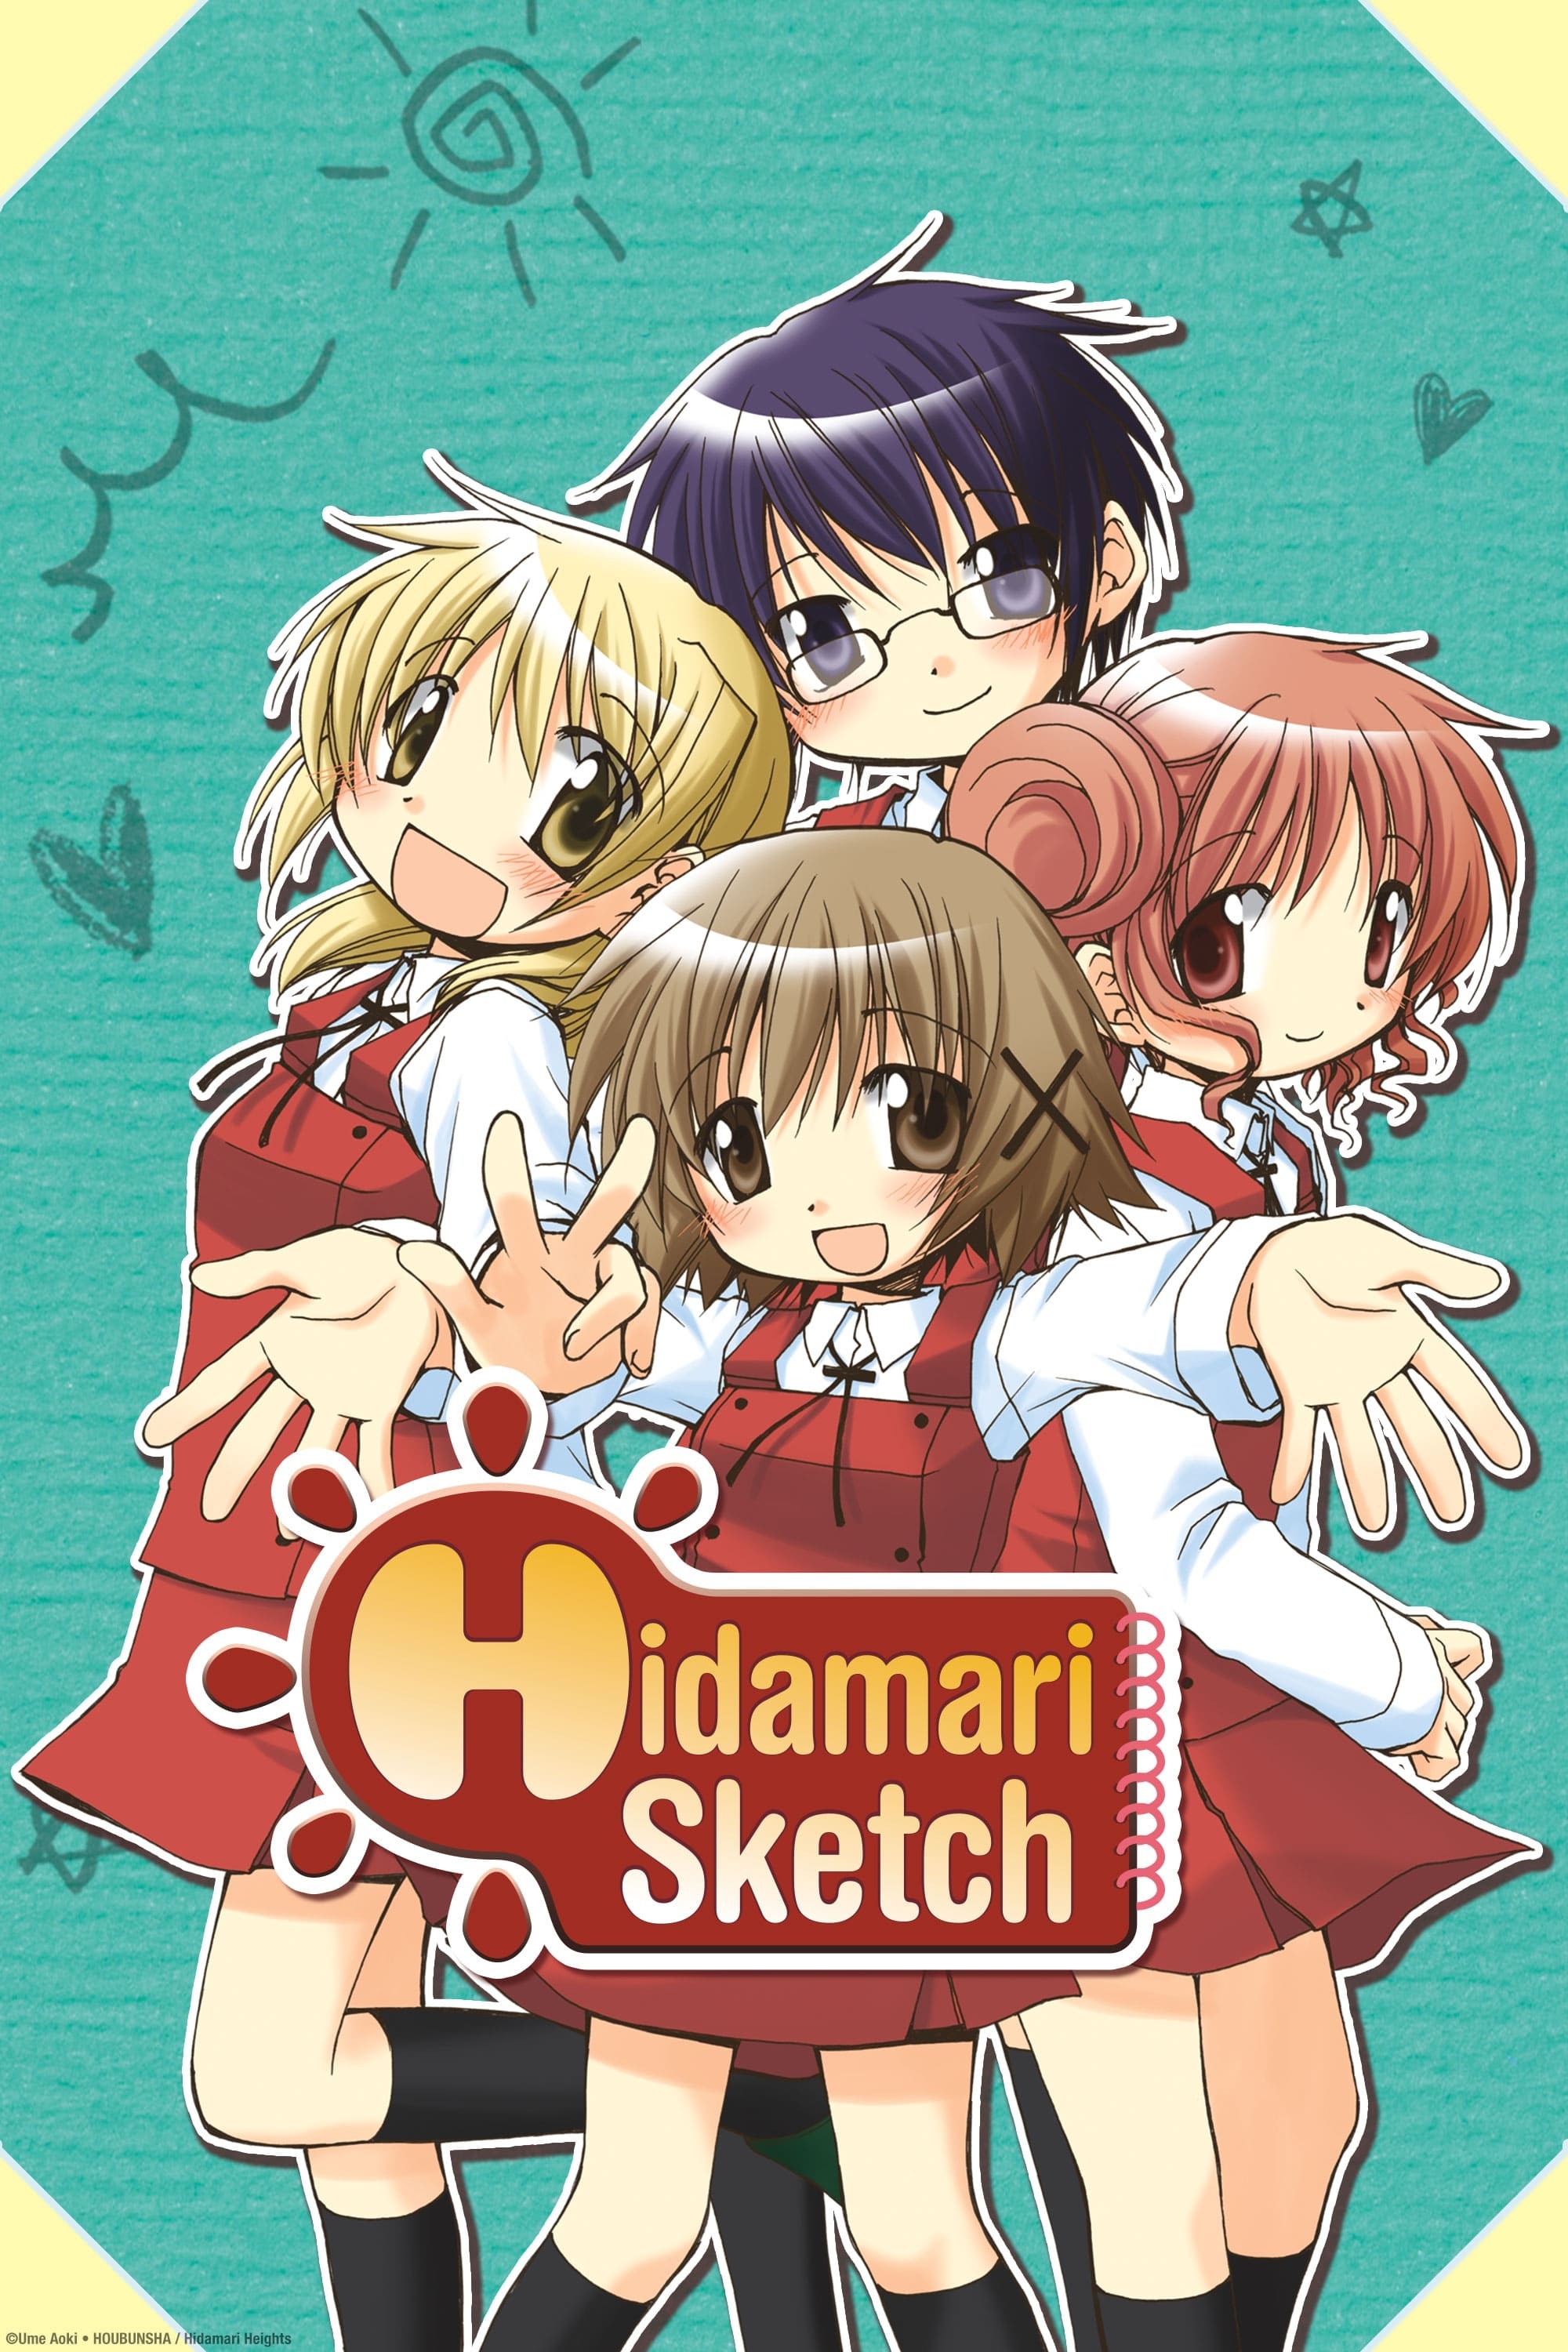 Hidamari Sketch (2007)